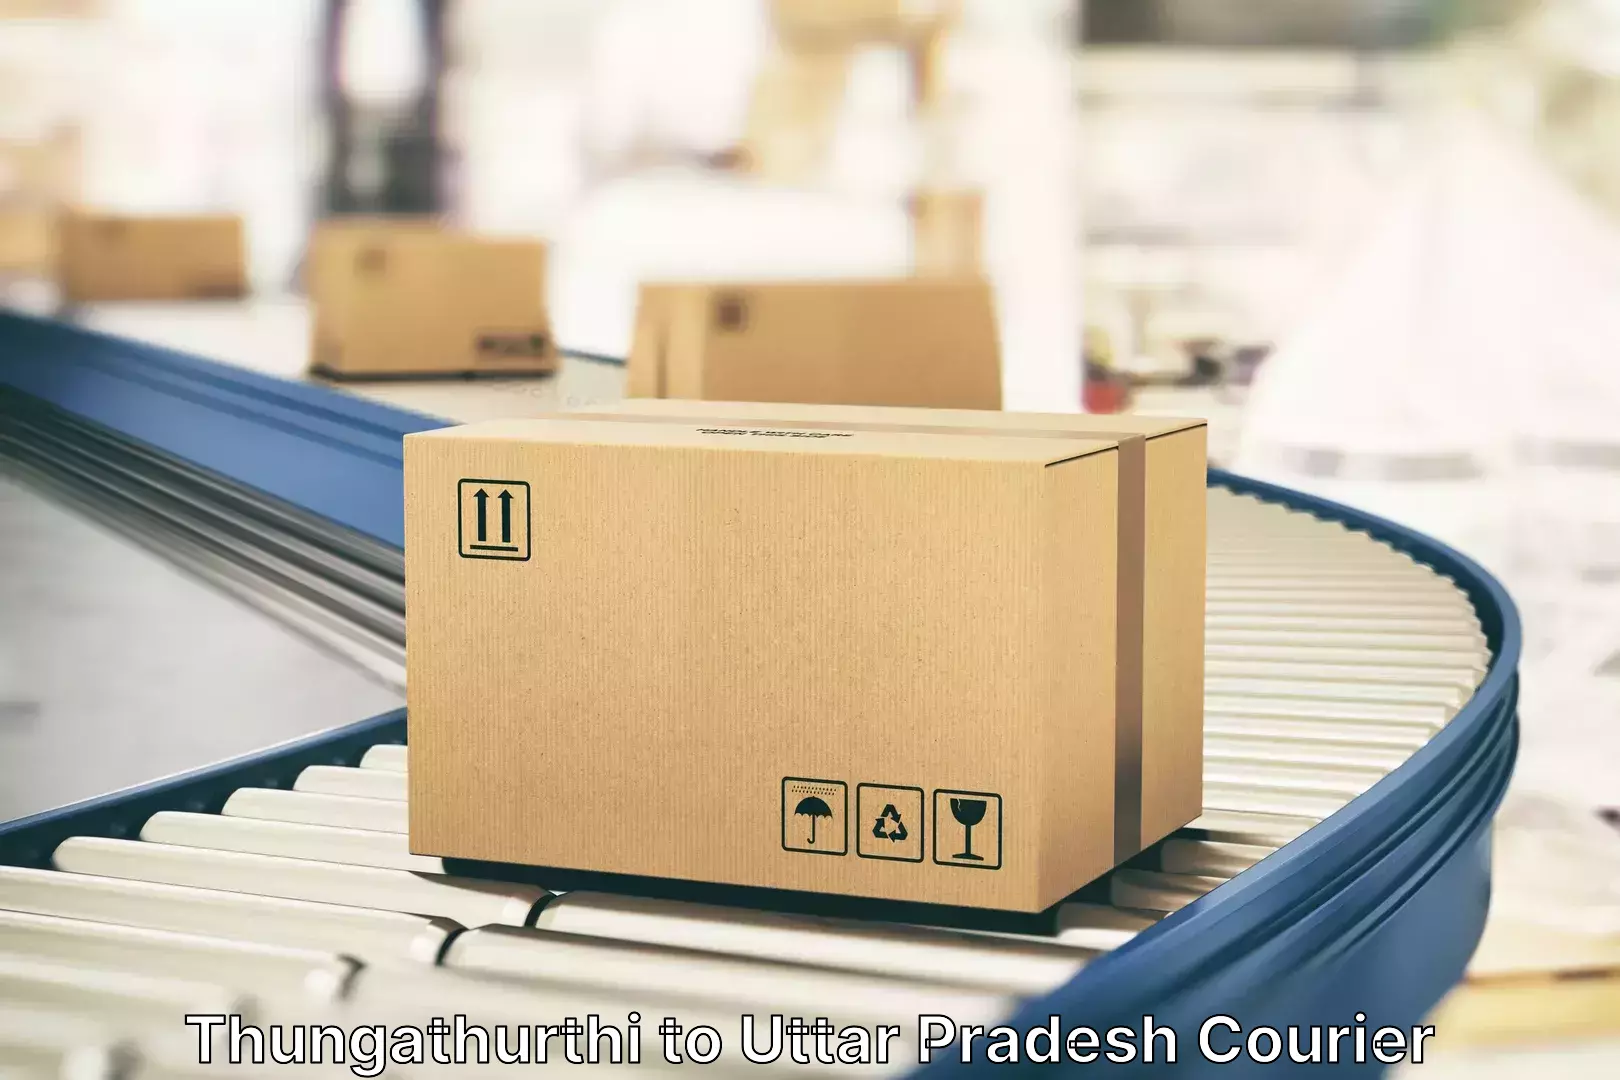 Luggage delivery rates Thungathurthi to Bansi